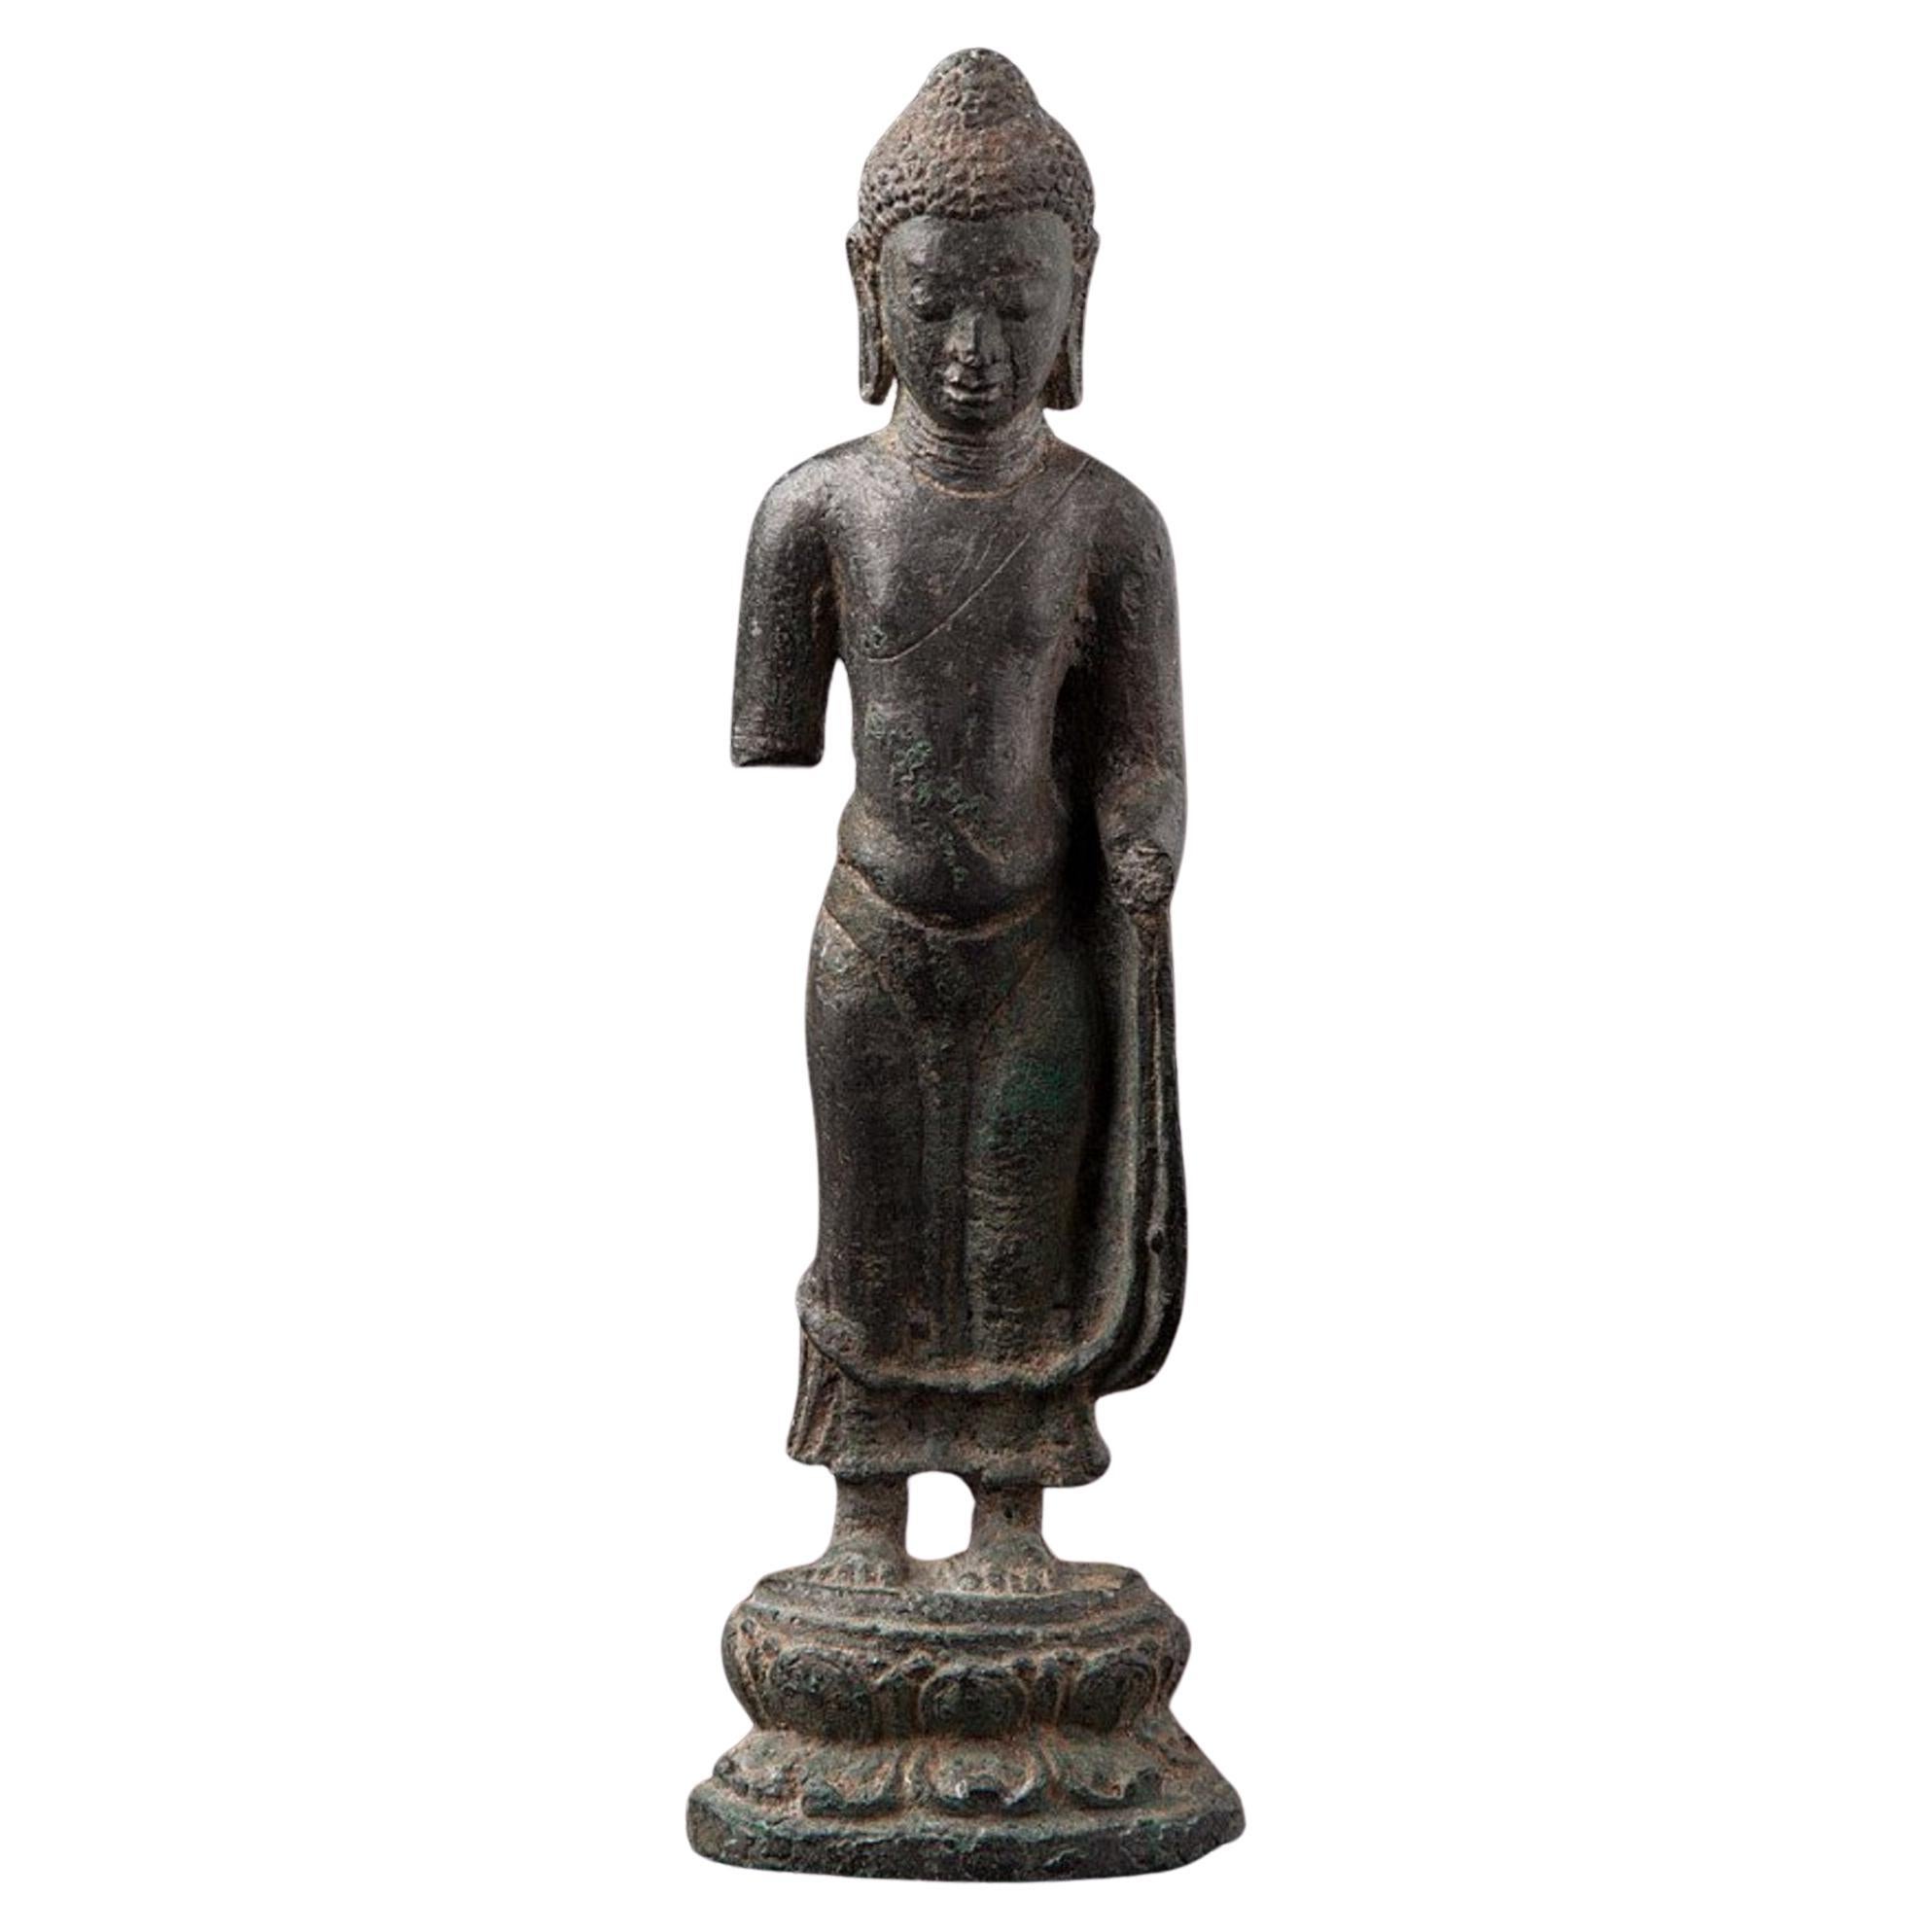 Large Original Bronze Pyu Buddha Statue from Burma Original Buddhas For Sale